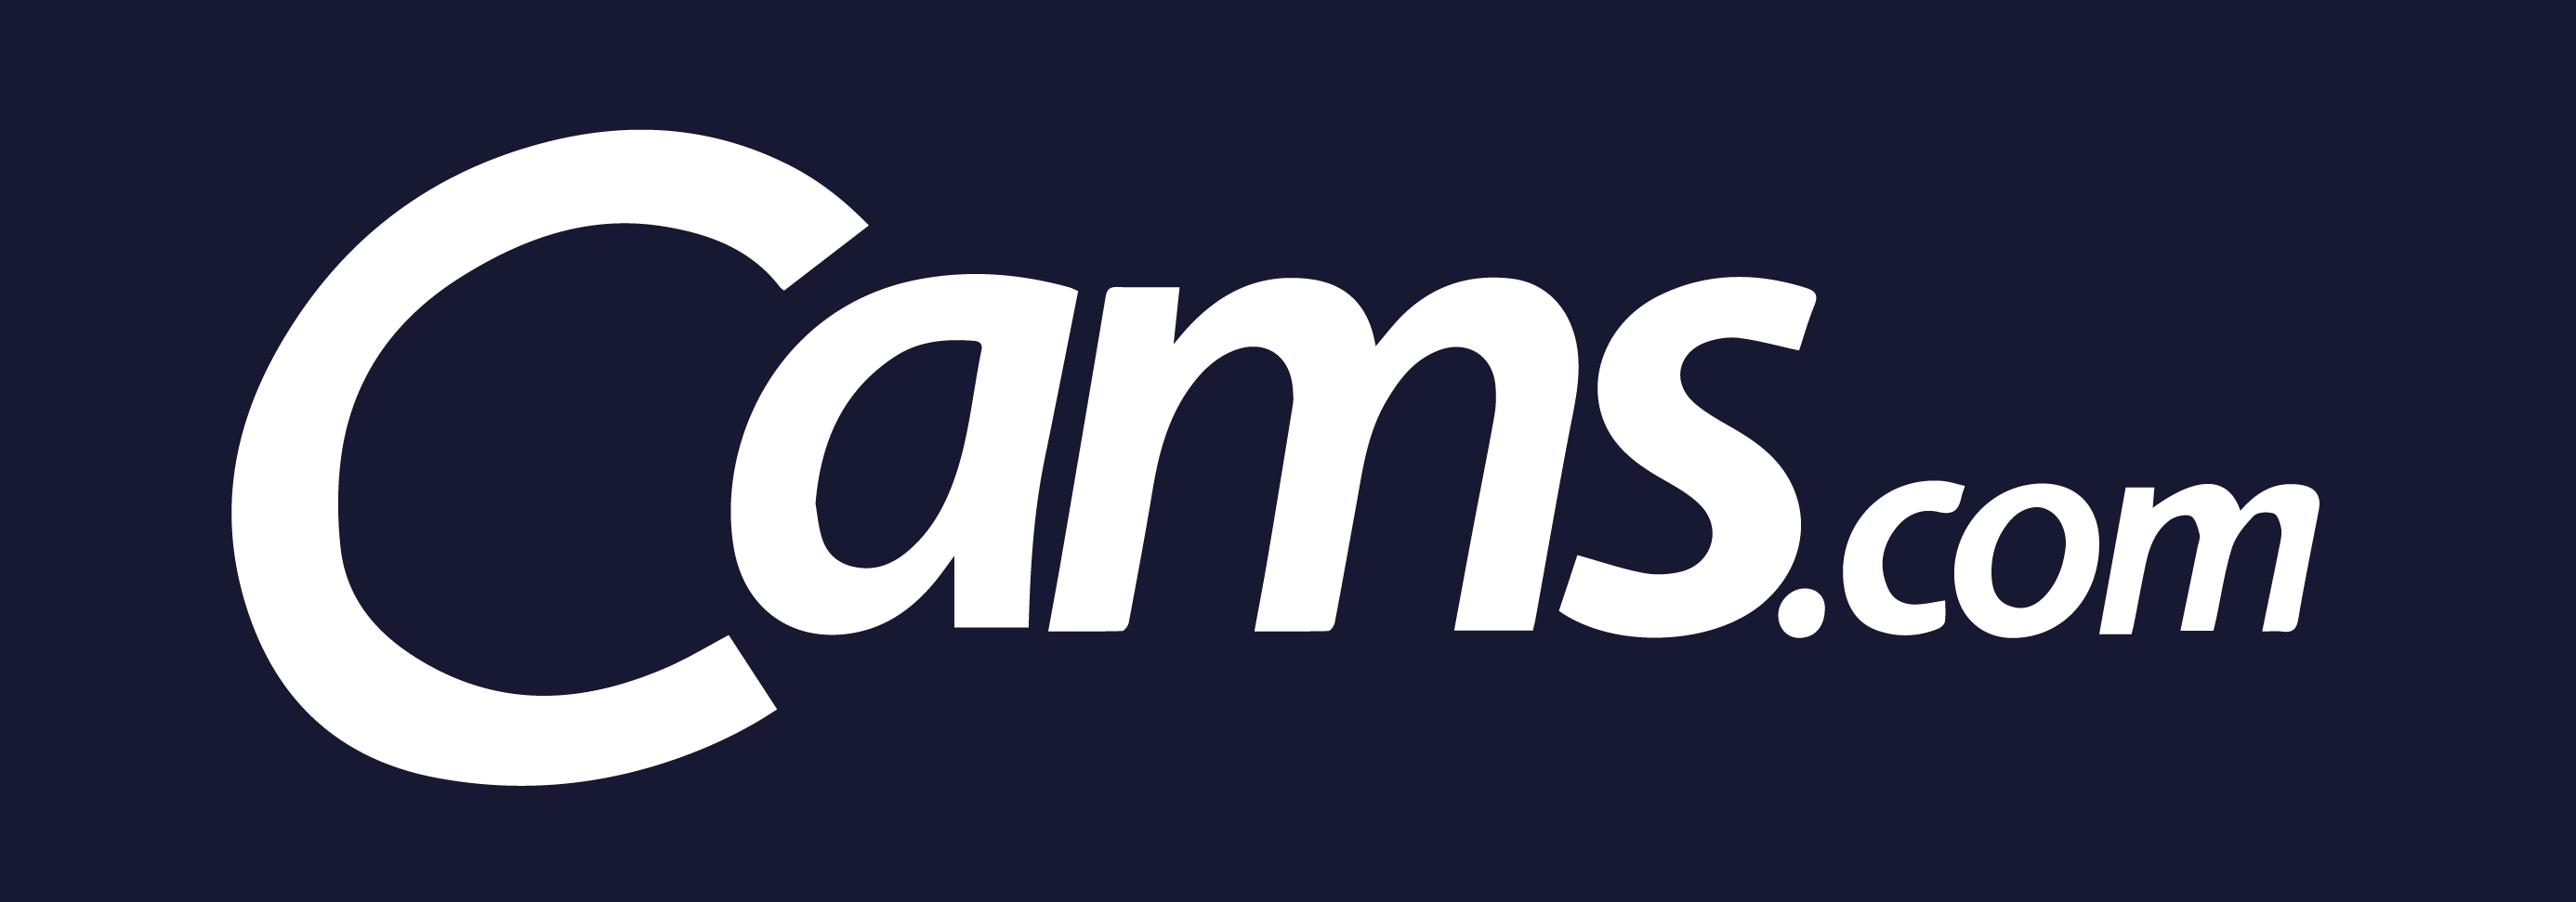 cams-logo-new.png__PID:869c7723-4d86-4344-a5c1-b9e29a0938ad